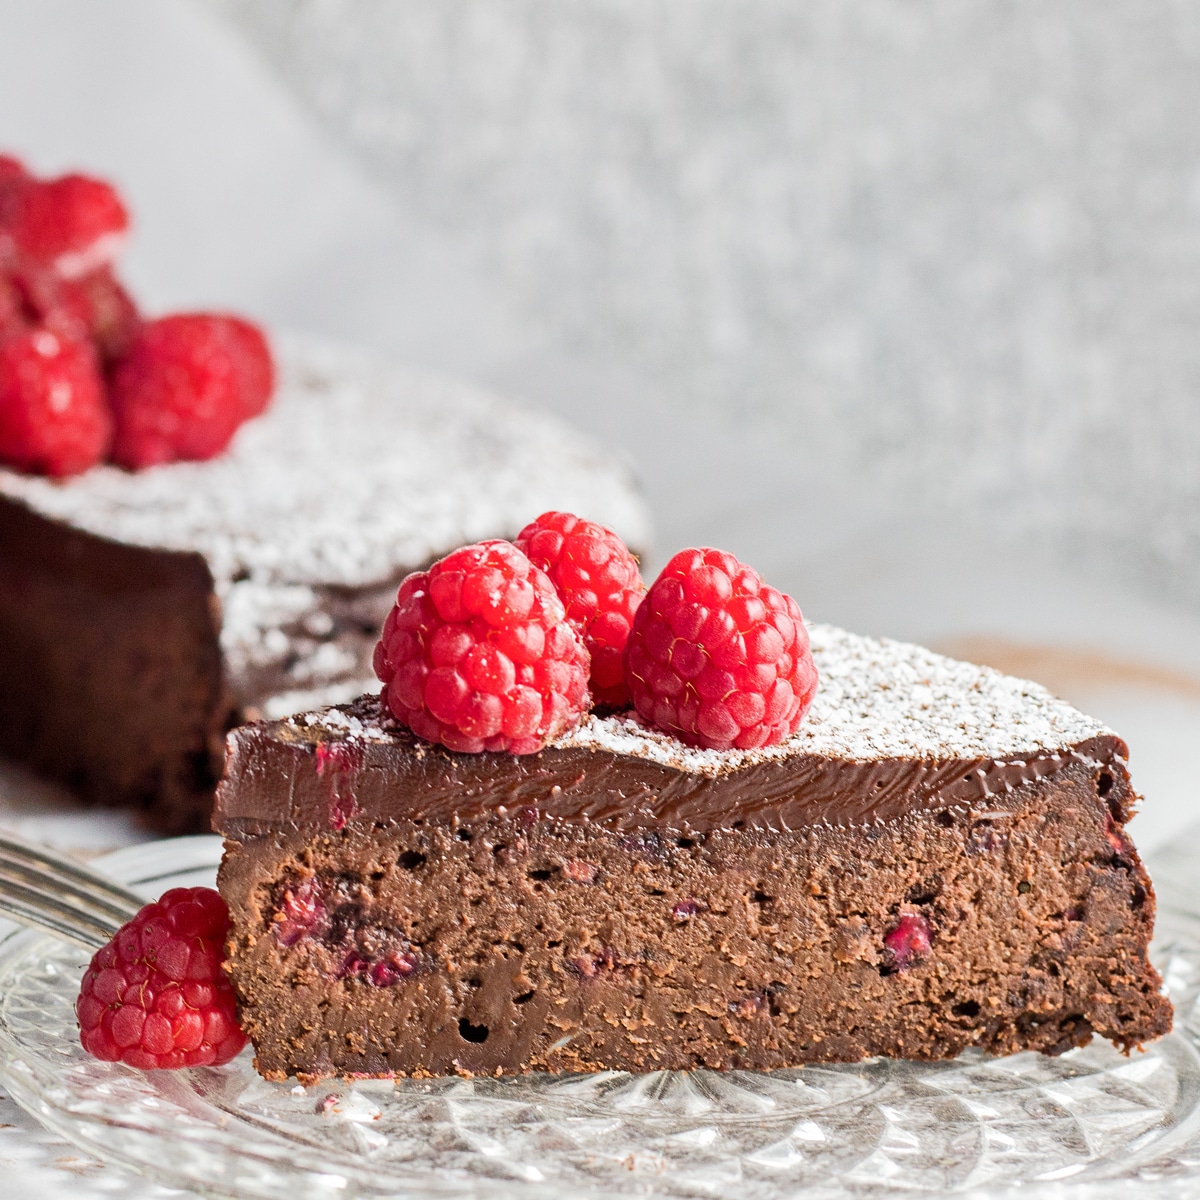 Kek raspberi coklat tanpa tepung dihiris dengan raspberi di atasnya.